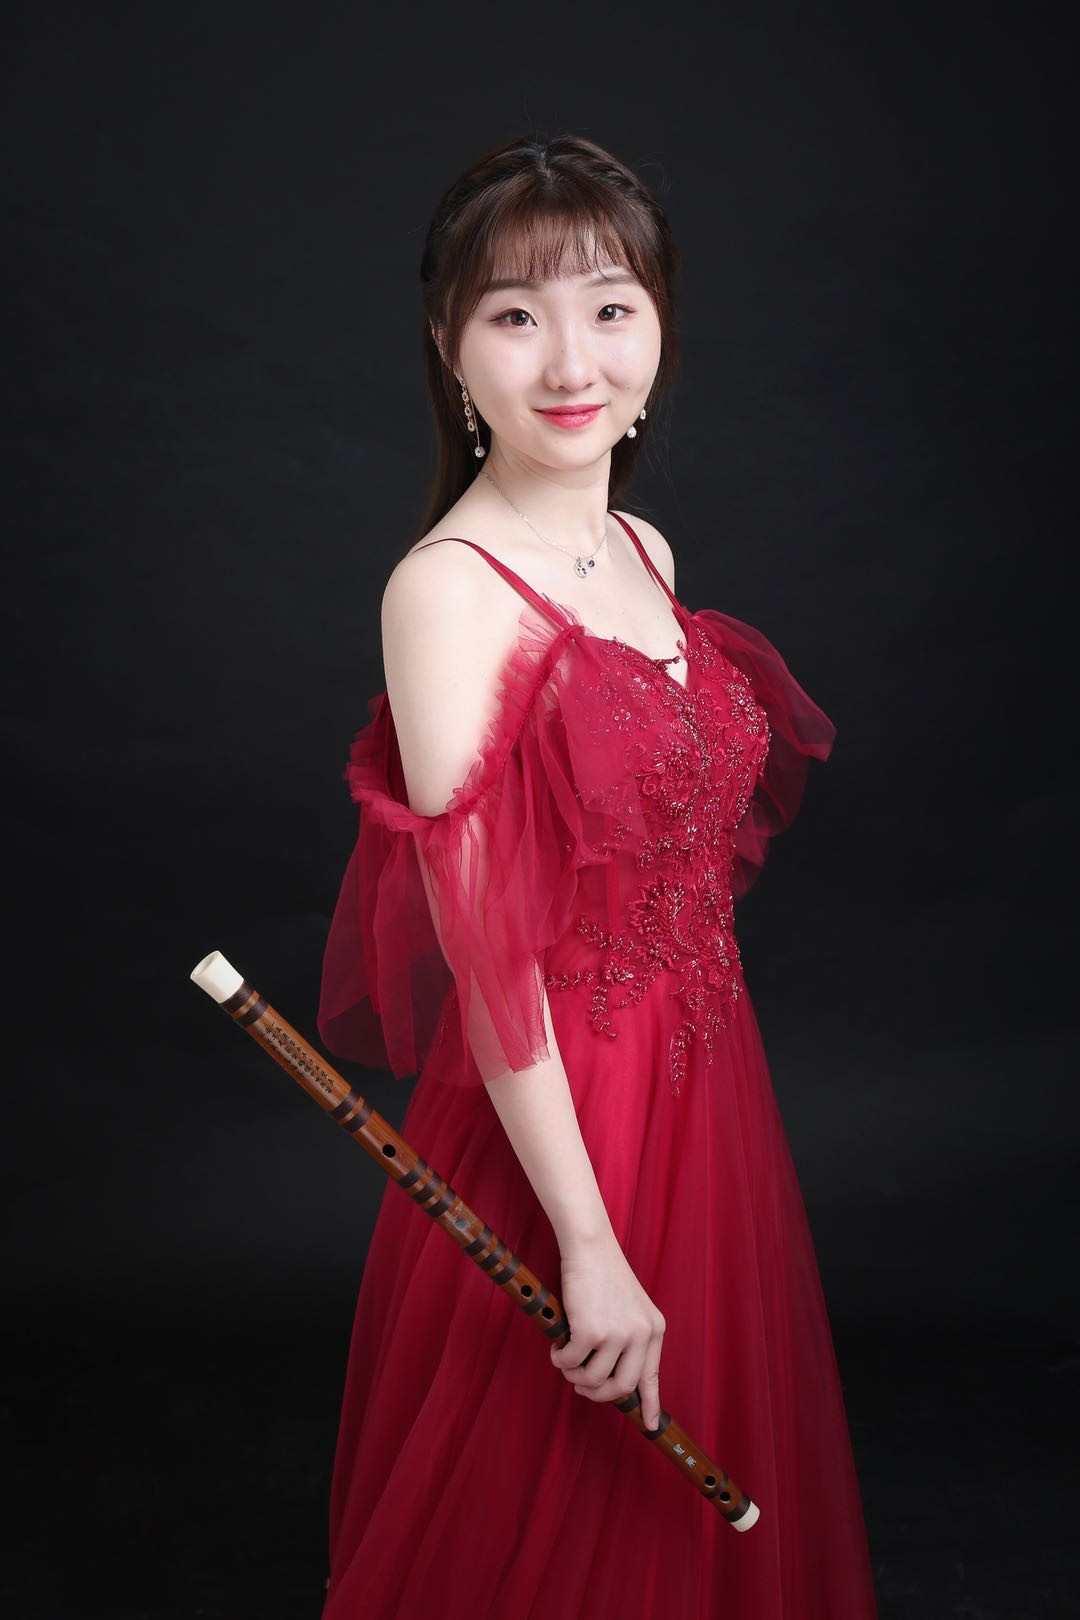 上海音乐学院全日制硕士研究生,师从著名竹笛演奏家,教育家唐俊乔